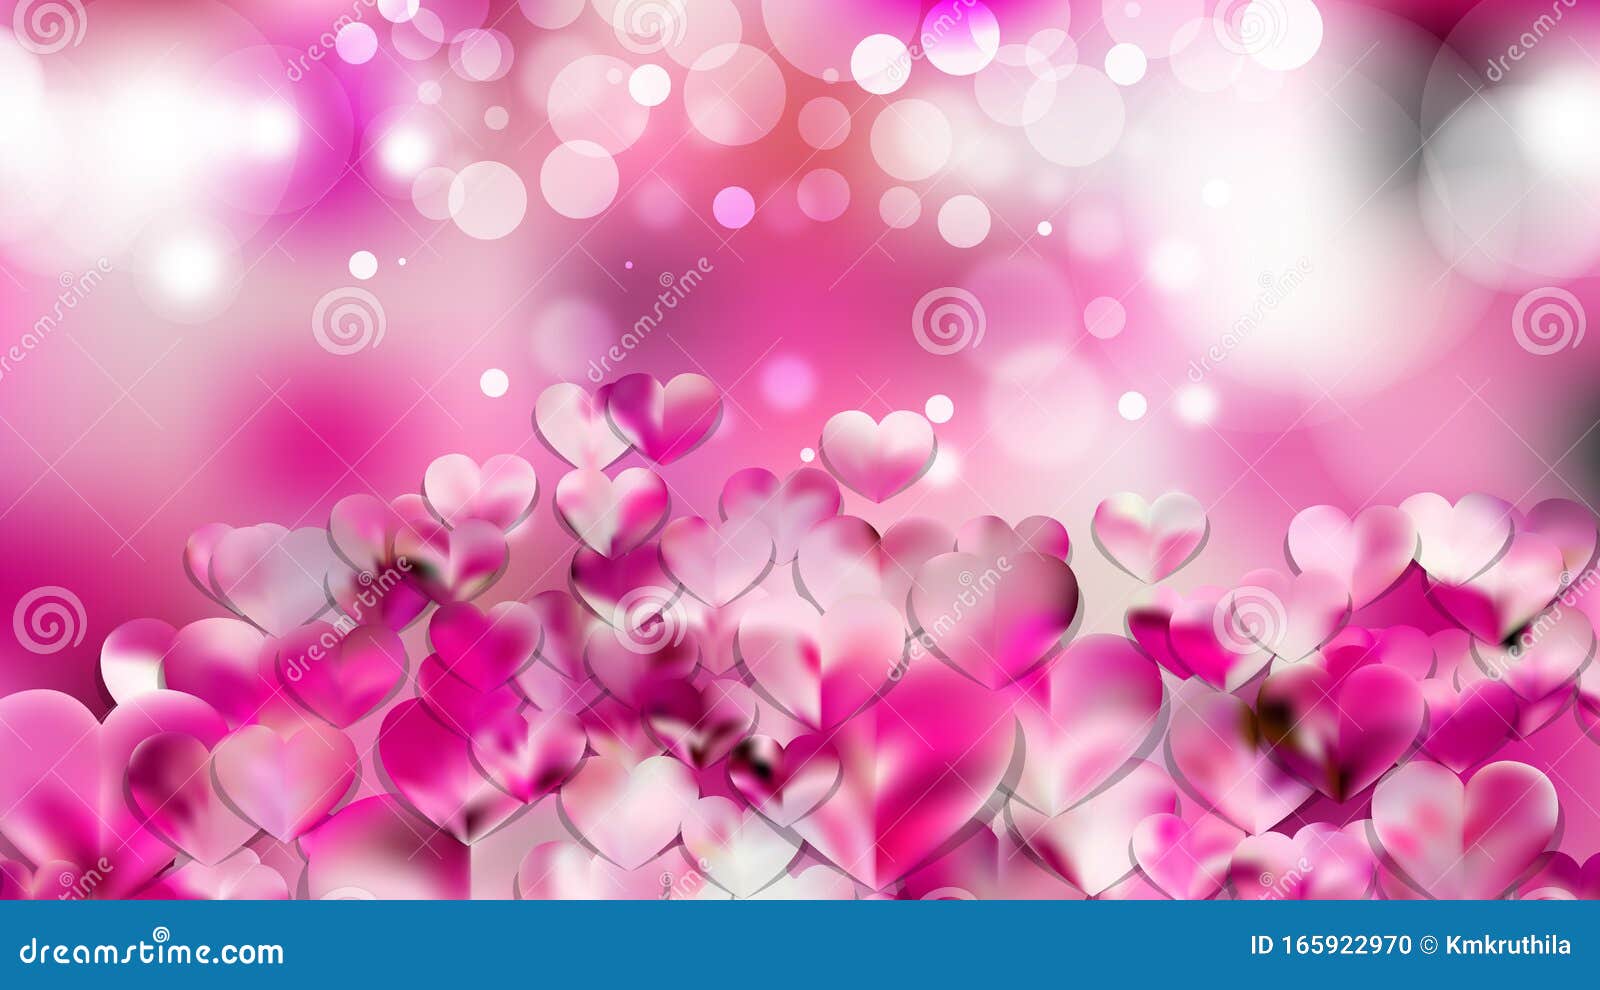 Cùng chiêm ngưỡng hình nền trái tim hồng trắng ngọt ngào này để tạo cho màn hình điện thoại của bạn sự lãng mạn và tình cảm hơn. Hình ảnh này chính là những thứ mà chúng ta cần khi cảm thấy buồn chán.